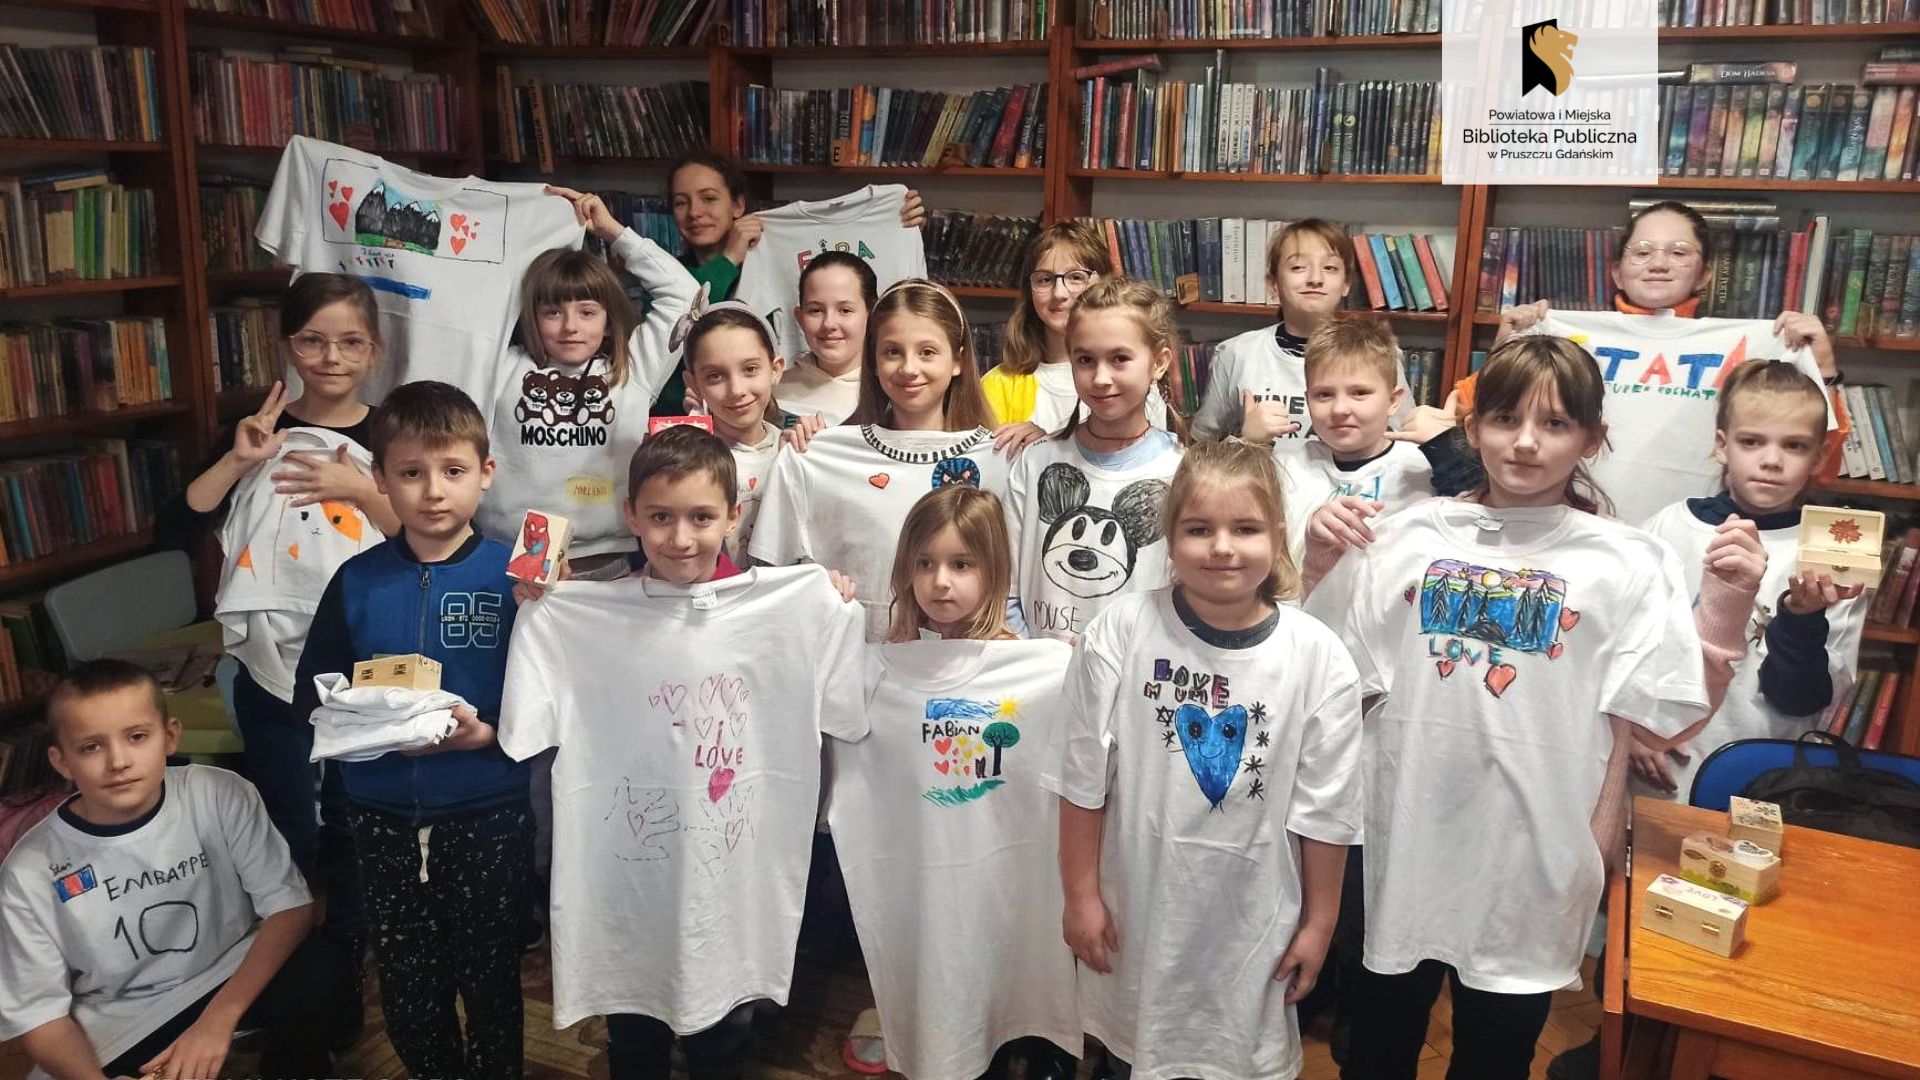 Osiemnaścioro dzieci stoi na tle regałów z książkami. Część z nich jest ubrana we własnoręcznie pomalowane koszulki, a część trzyma koszulki przed sobą. Kilkoro dzieci trzyma również ozdobione przez siebie szkatułki.